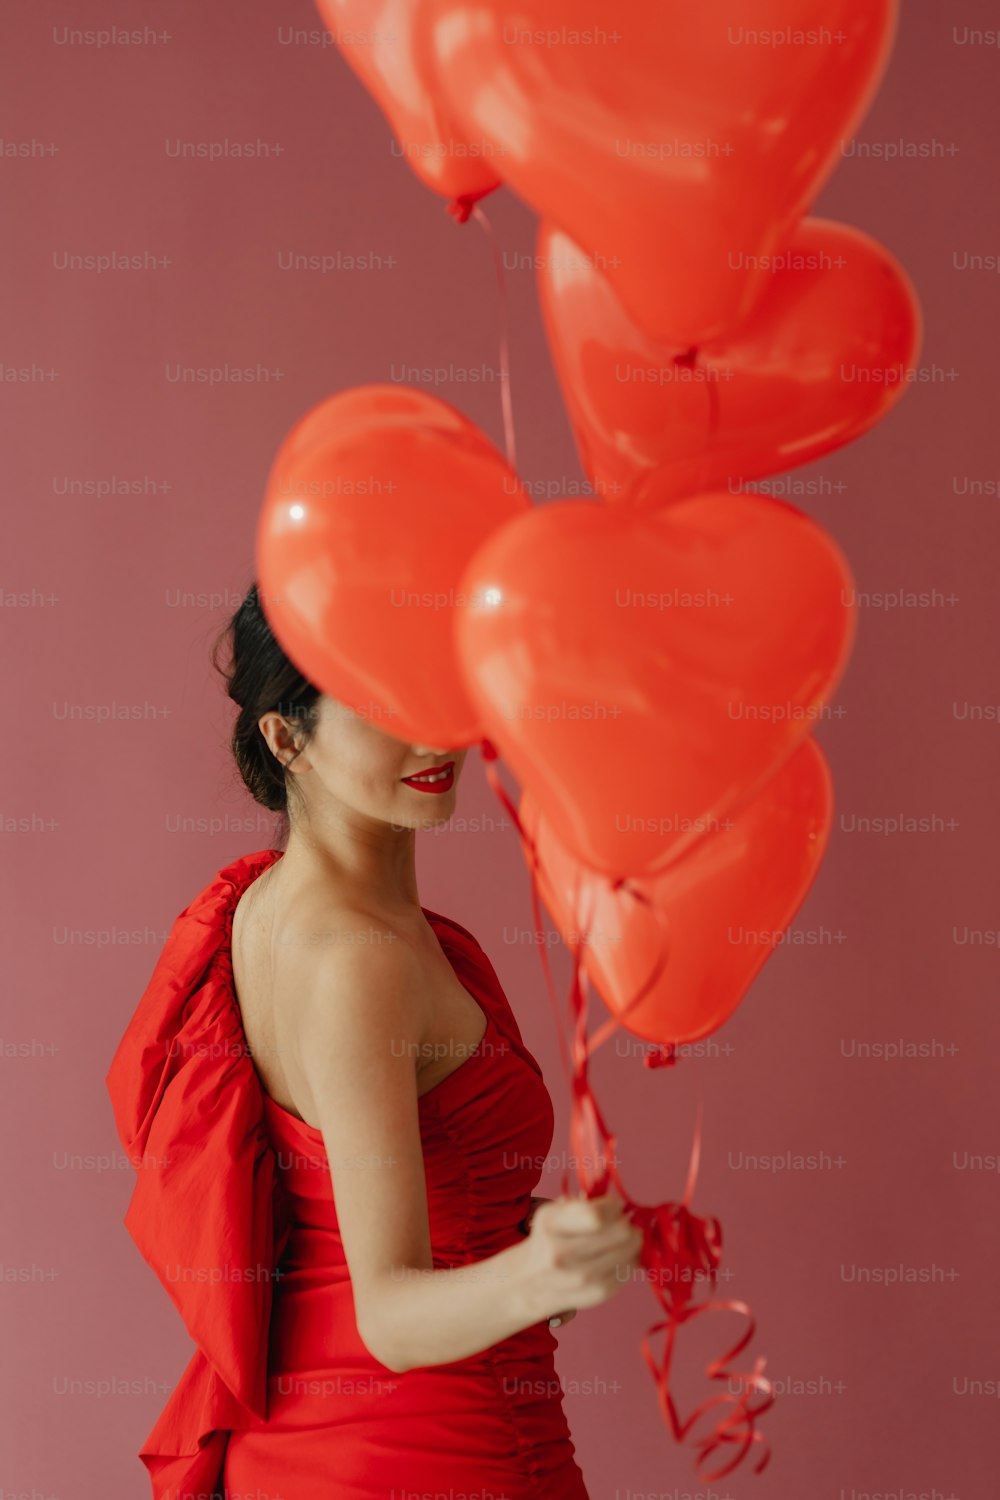 Eine Frau in einem roten Kleid, die einen Haufen roter Luftballons hält